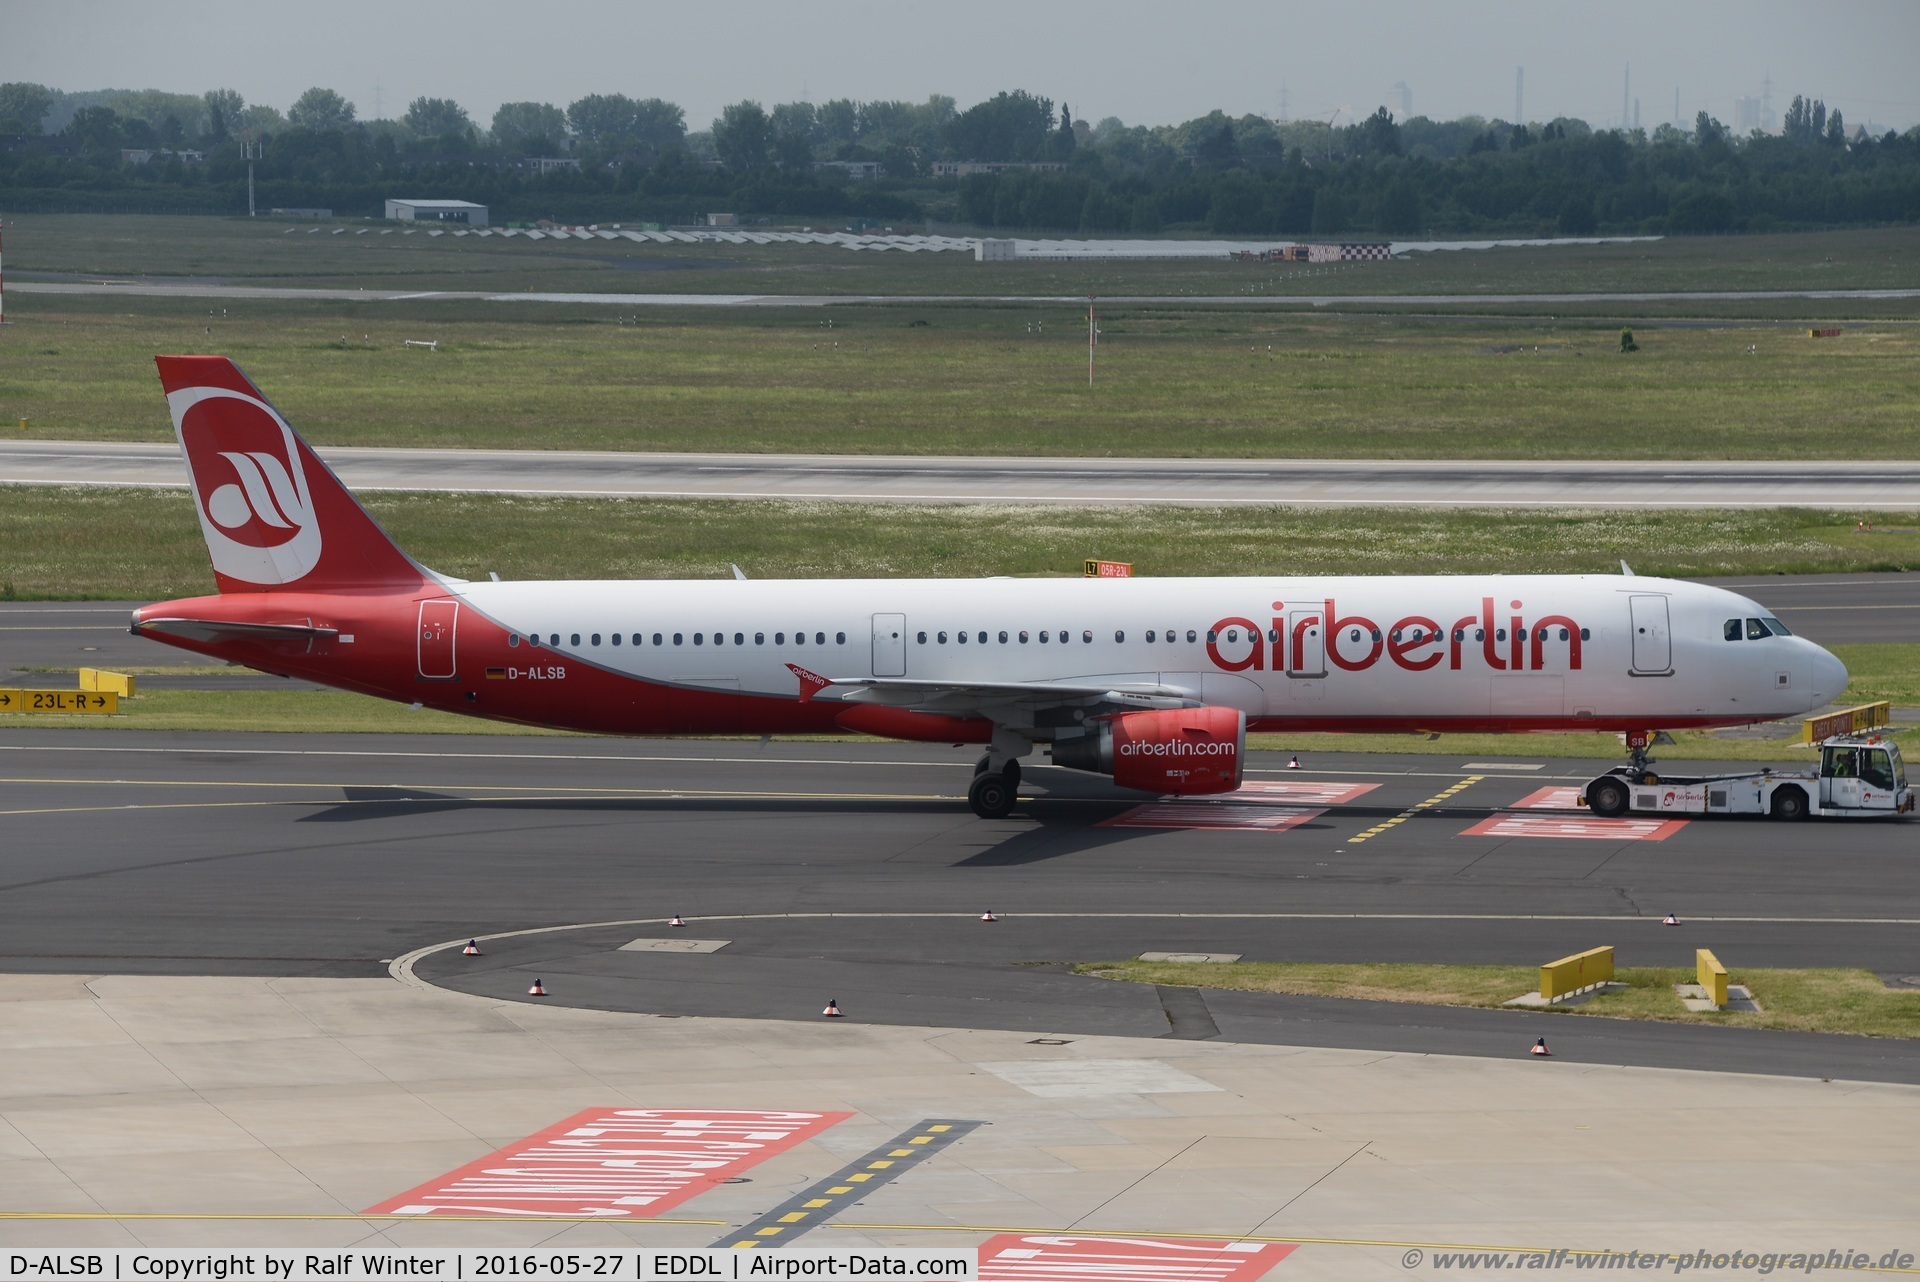 D-ALSB, 2003 Airbus A321-211 C/N 1994, Airbus A321-211 - AB BER Air Berlin - 1994 - D-ALSB - 27.05.2016 - DUS